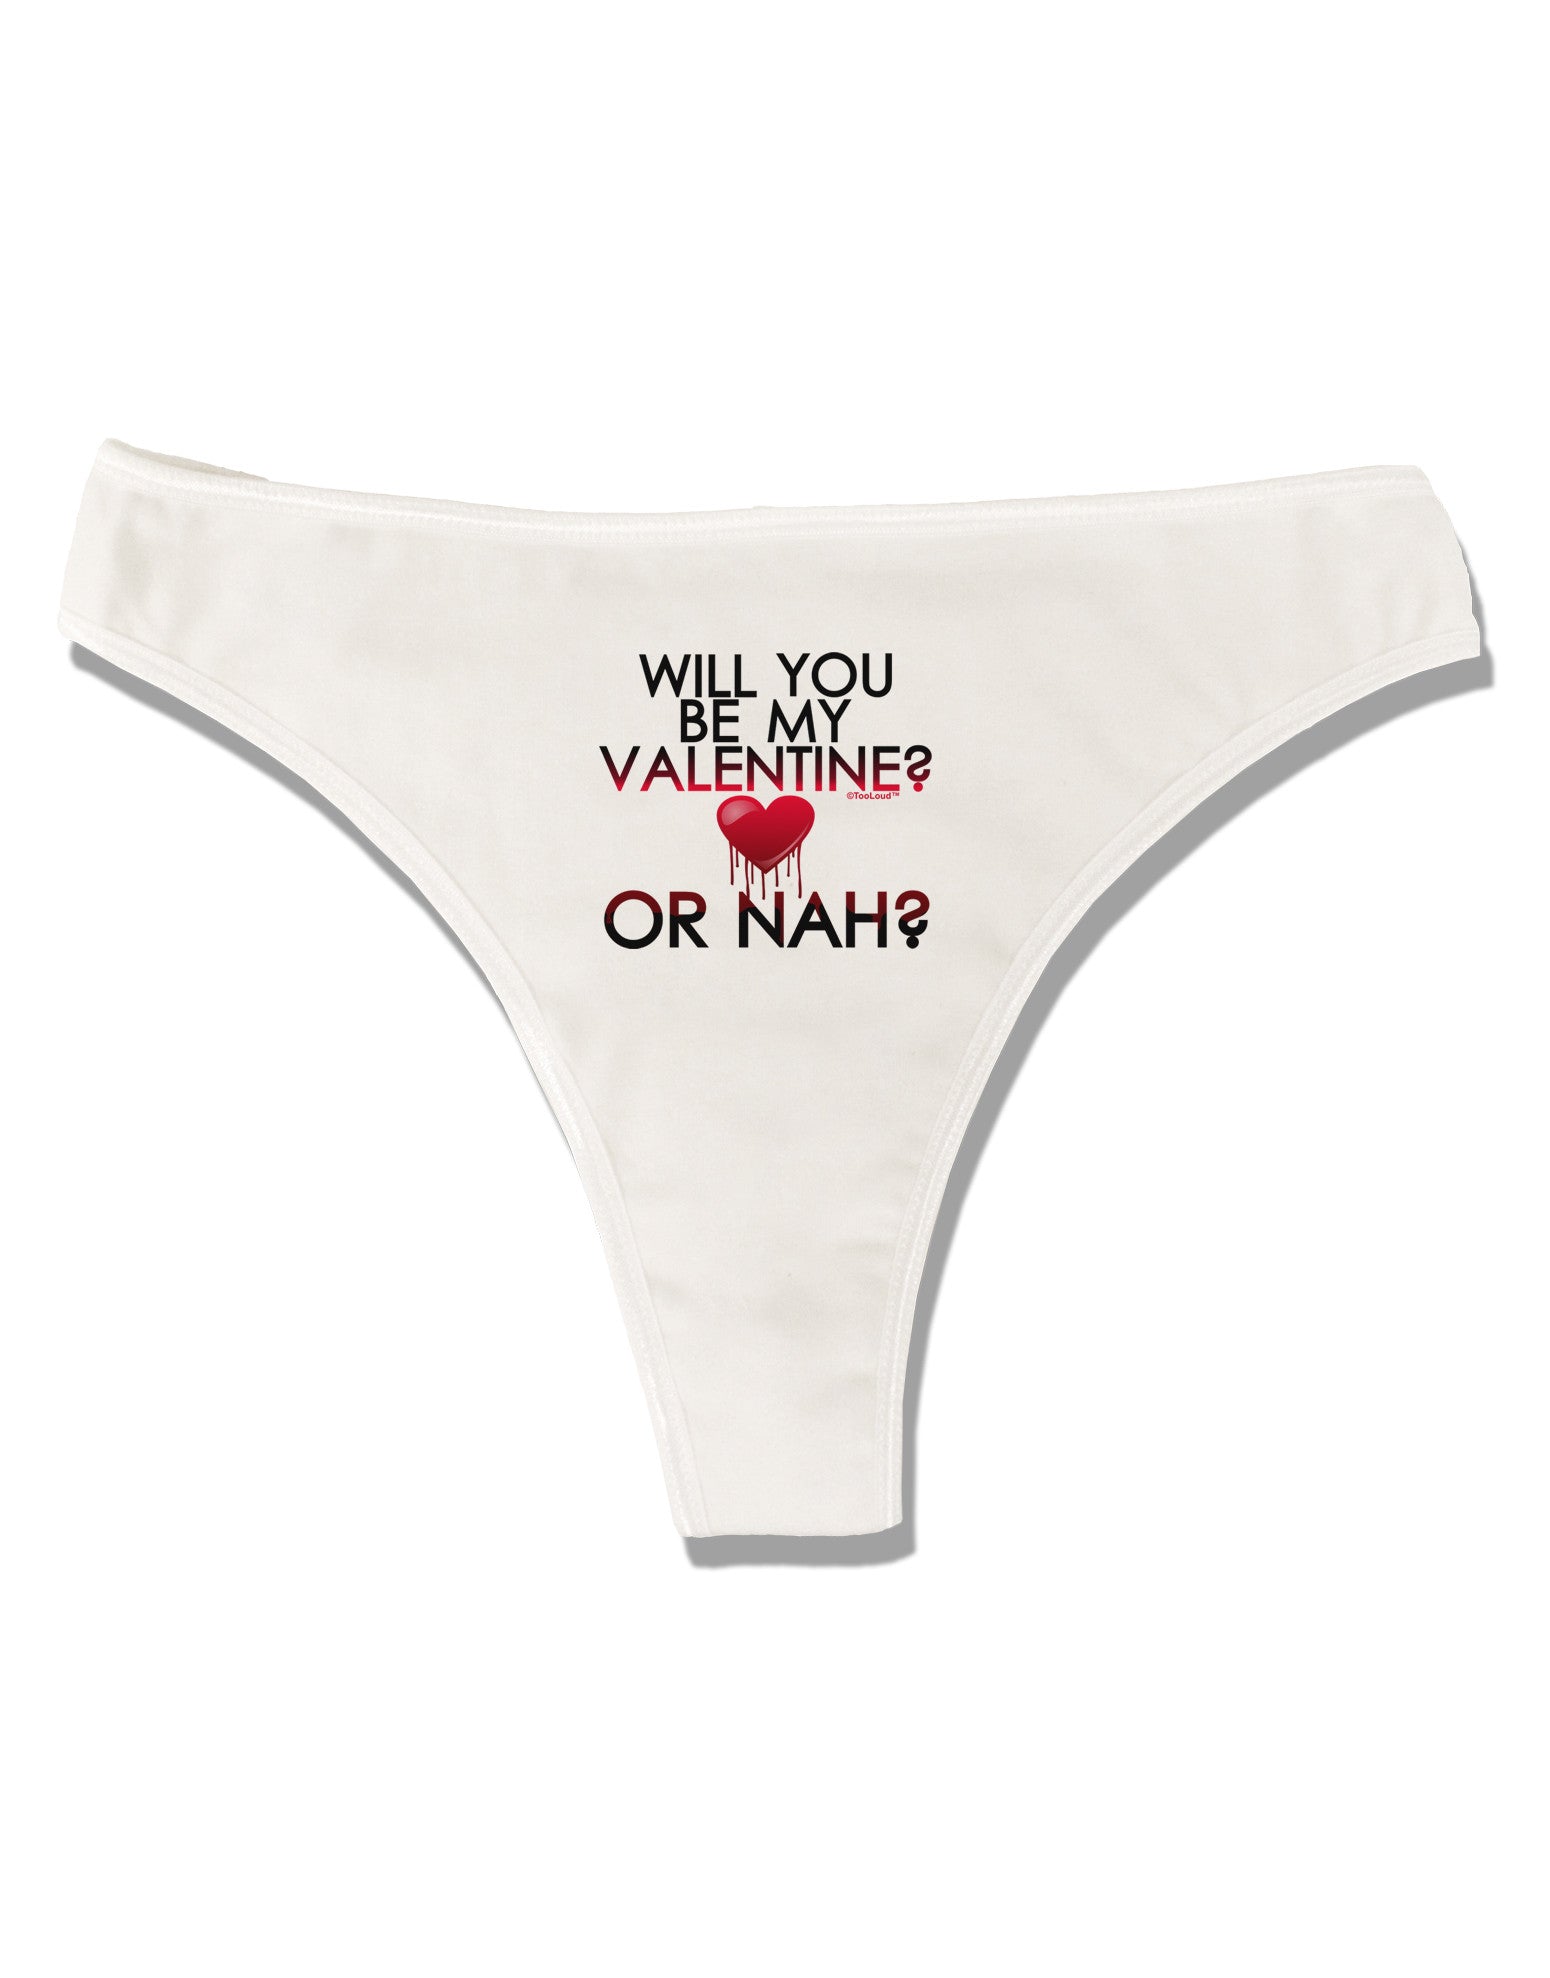 No Bae For Valentine's Day Mens Boxer Brief Underwear - NDS WEAR